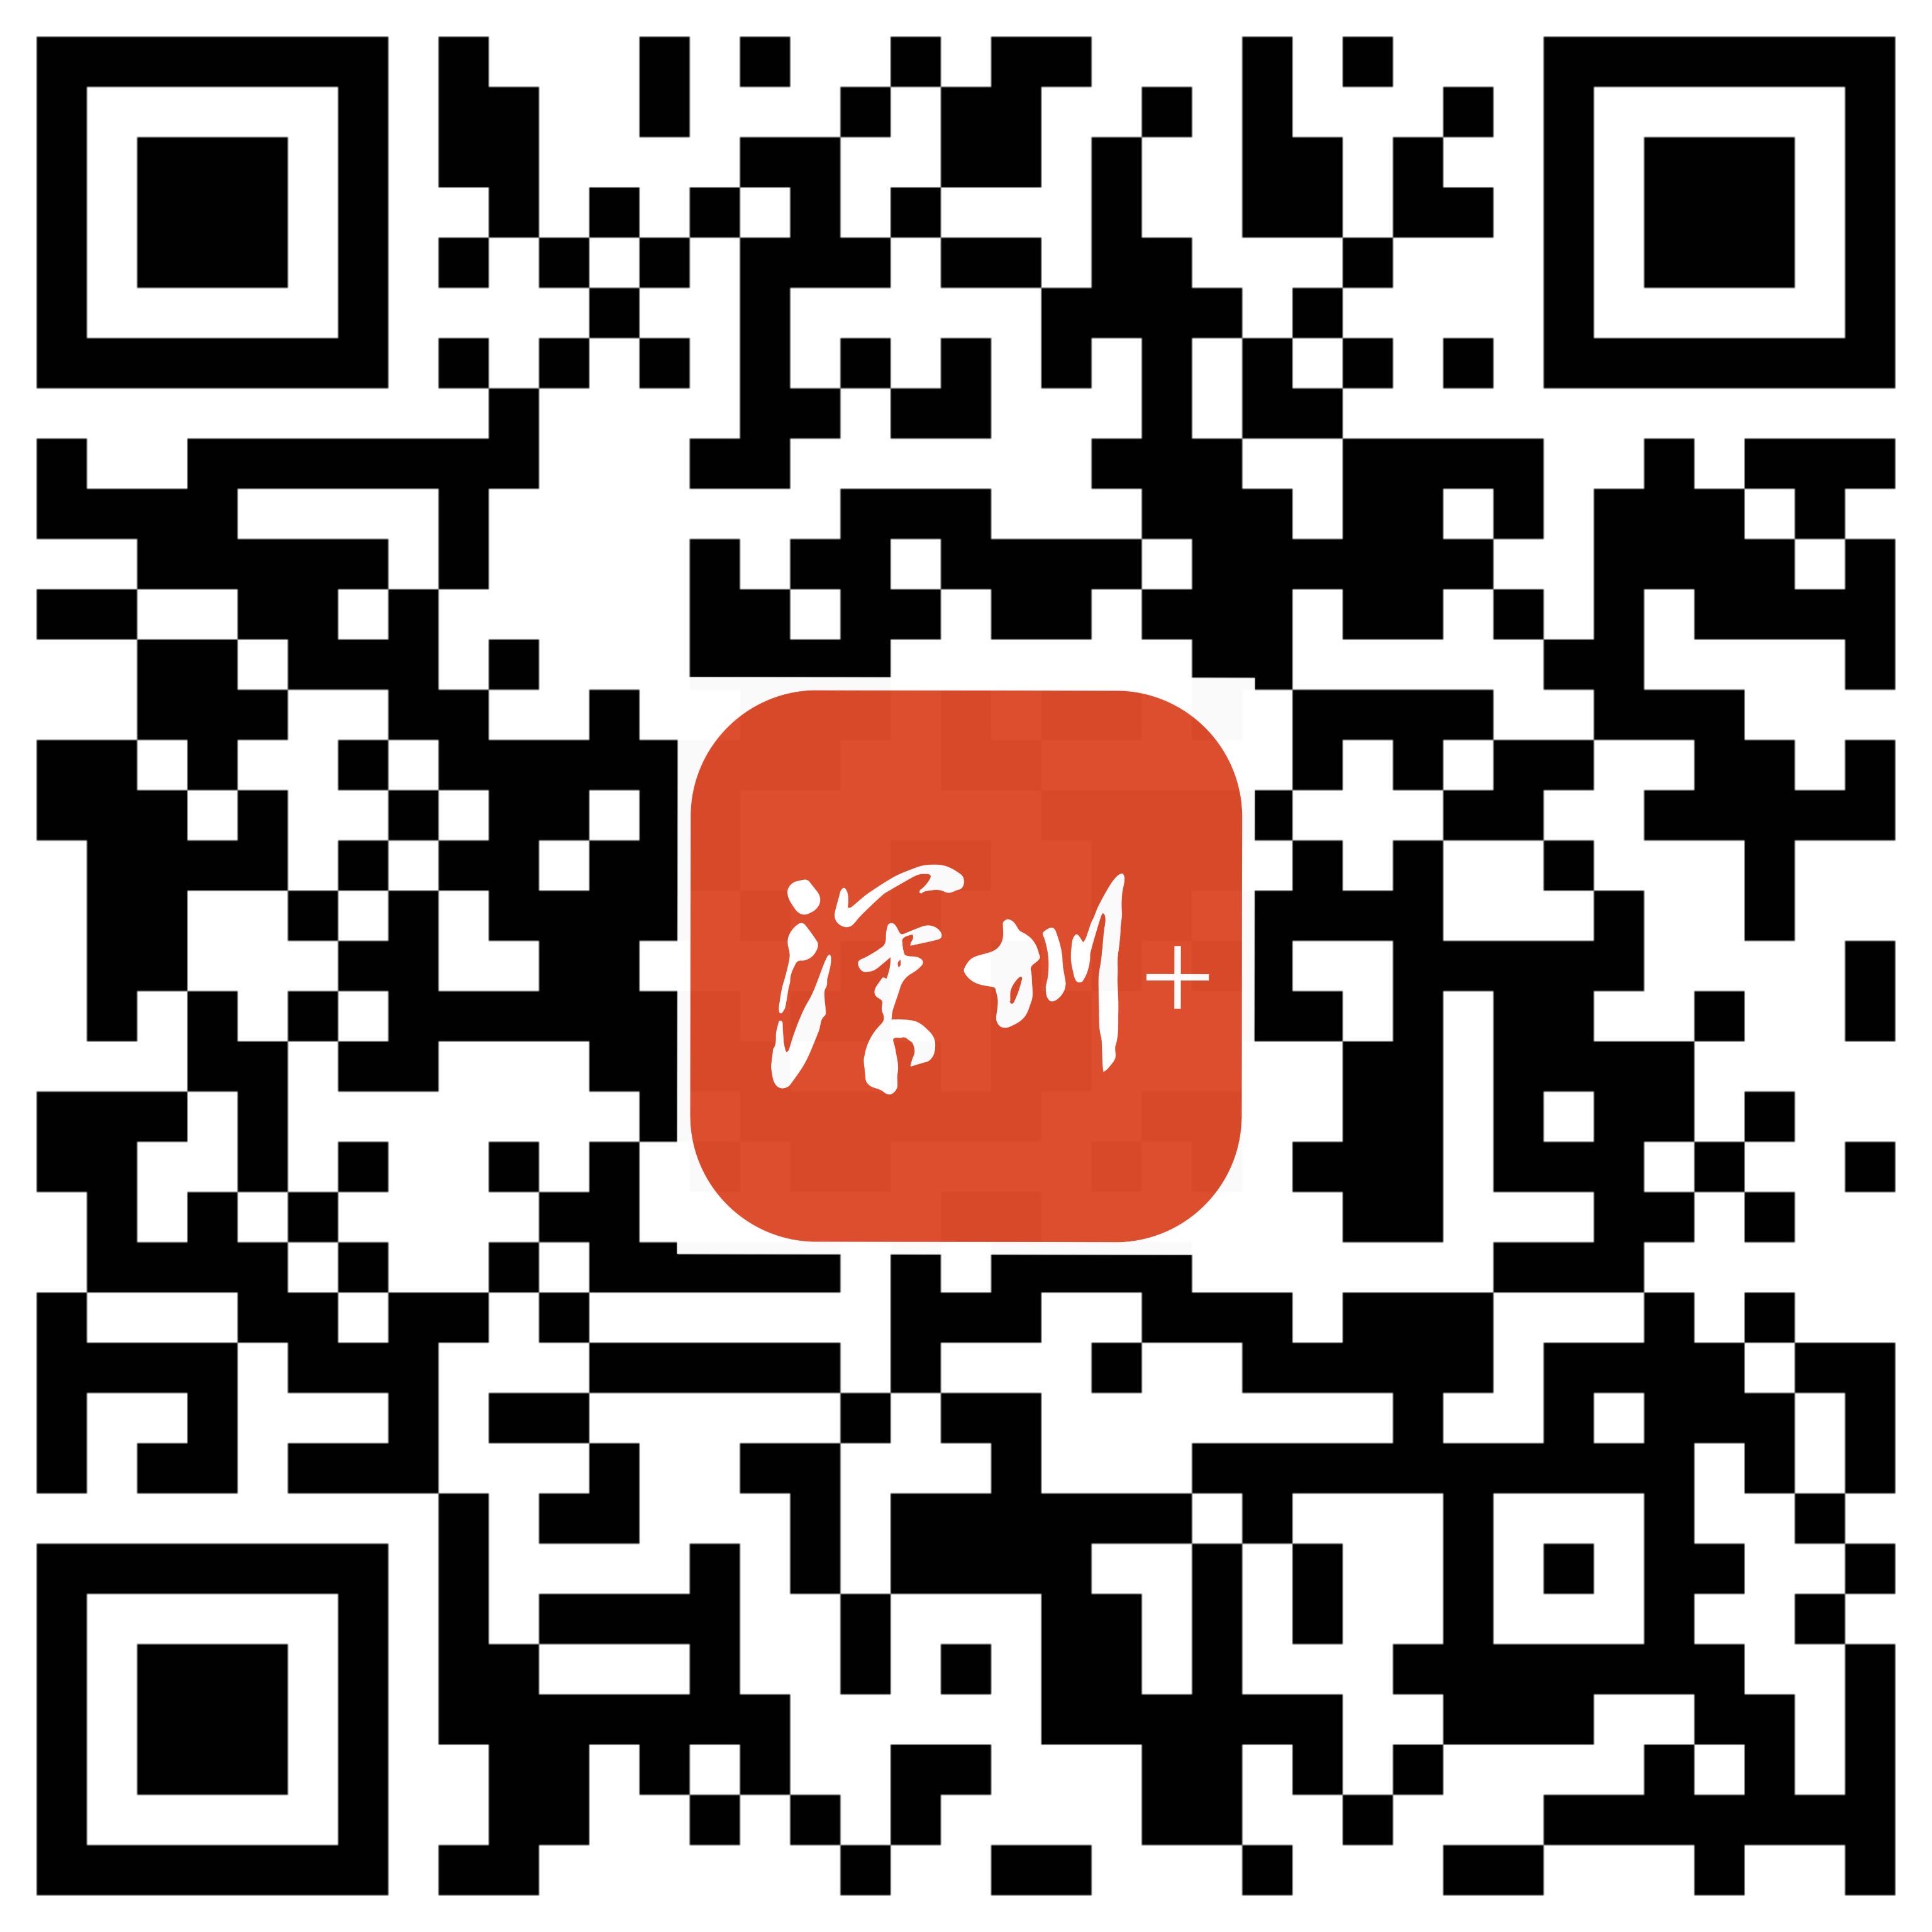 深圳+带logo.jpg